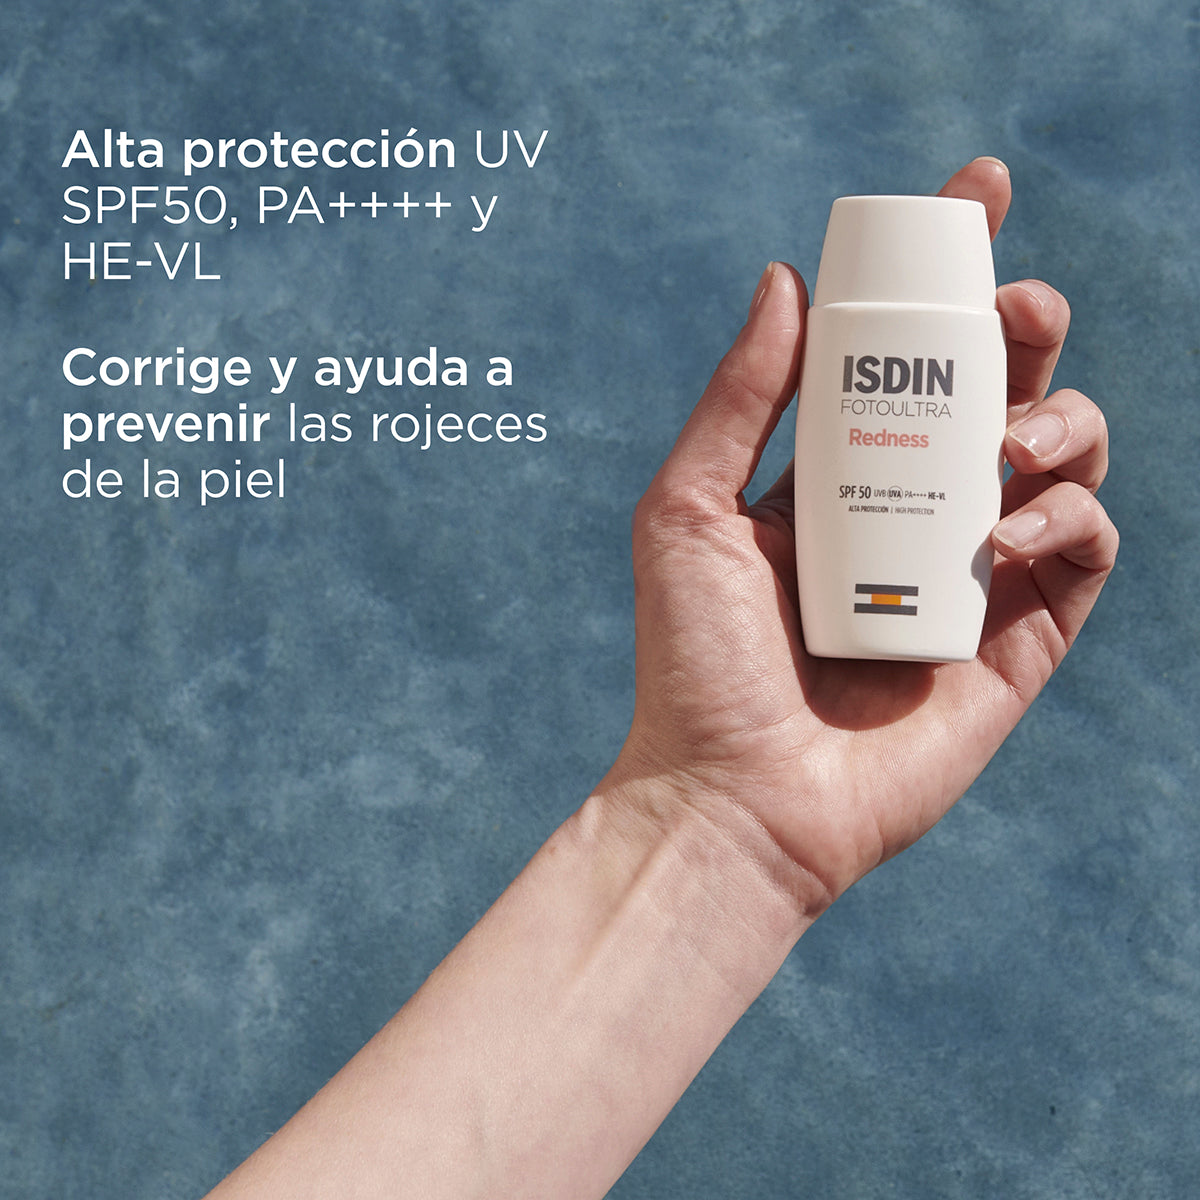 Fotoultra Redness SPF50 de ISDIN - Alta Protección Solar y Corrección de Rojeces